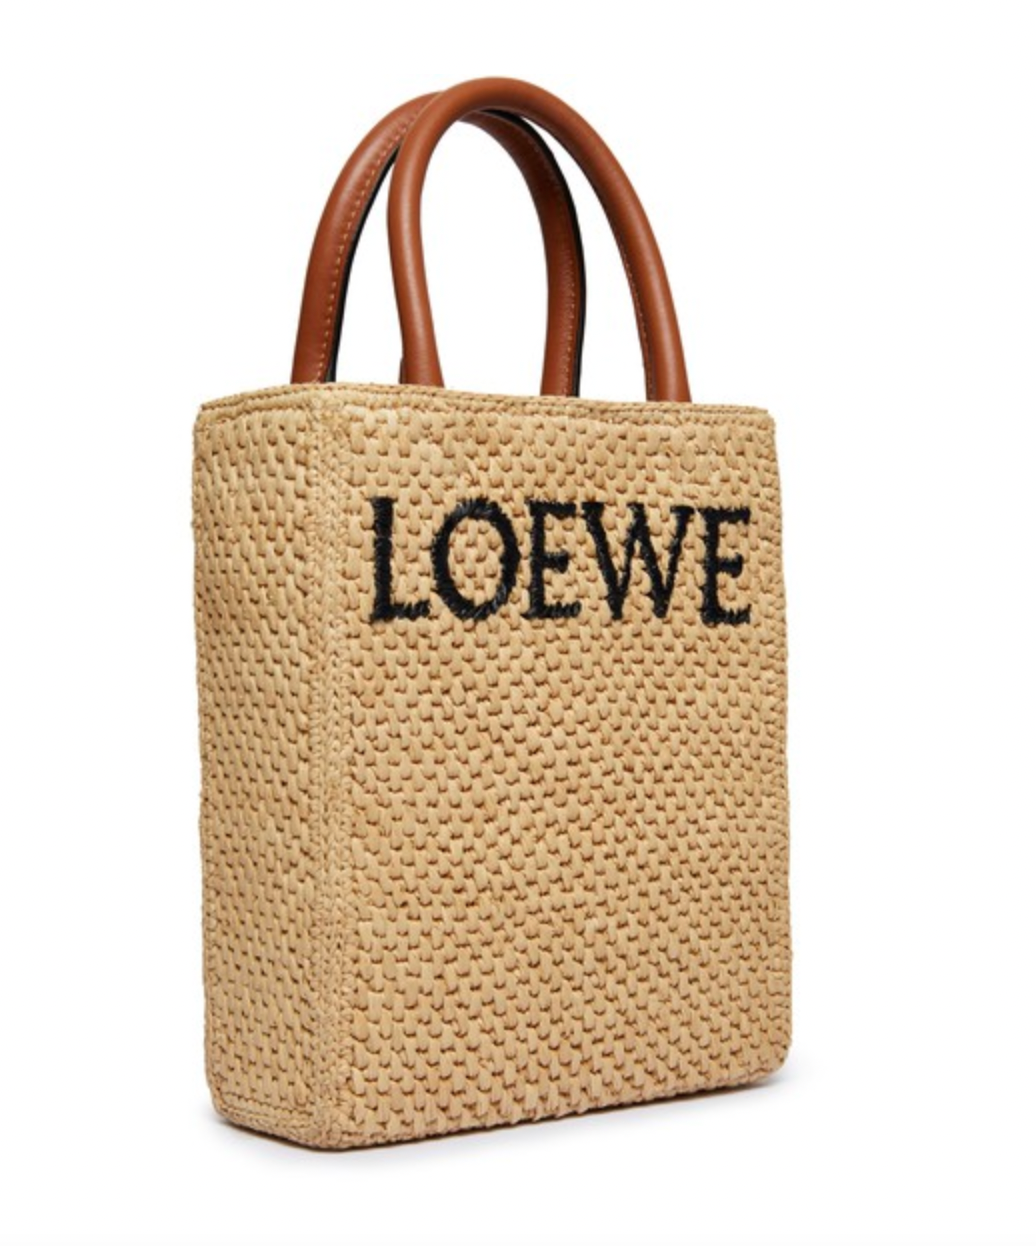 Loewe Raffia Logo Tote Bag